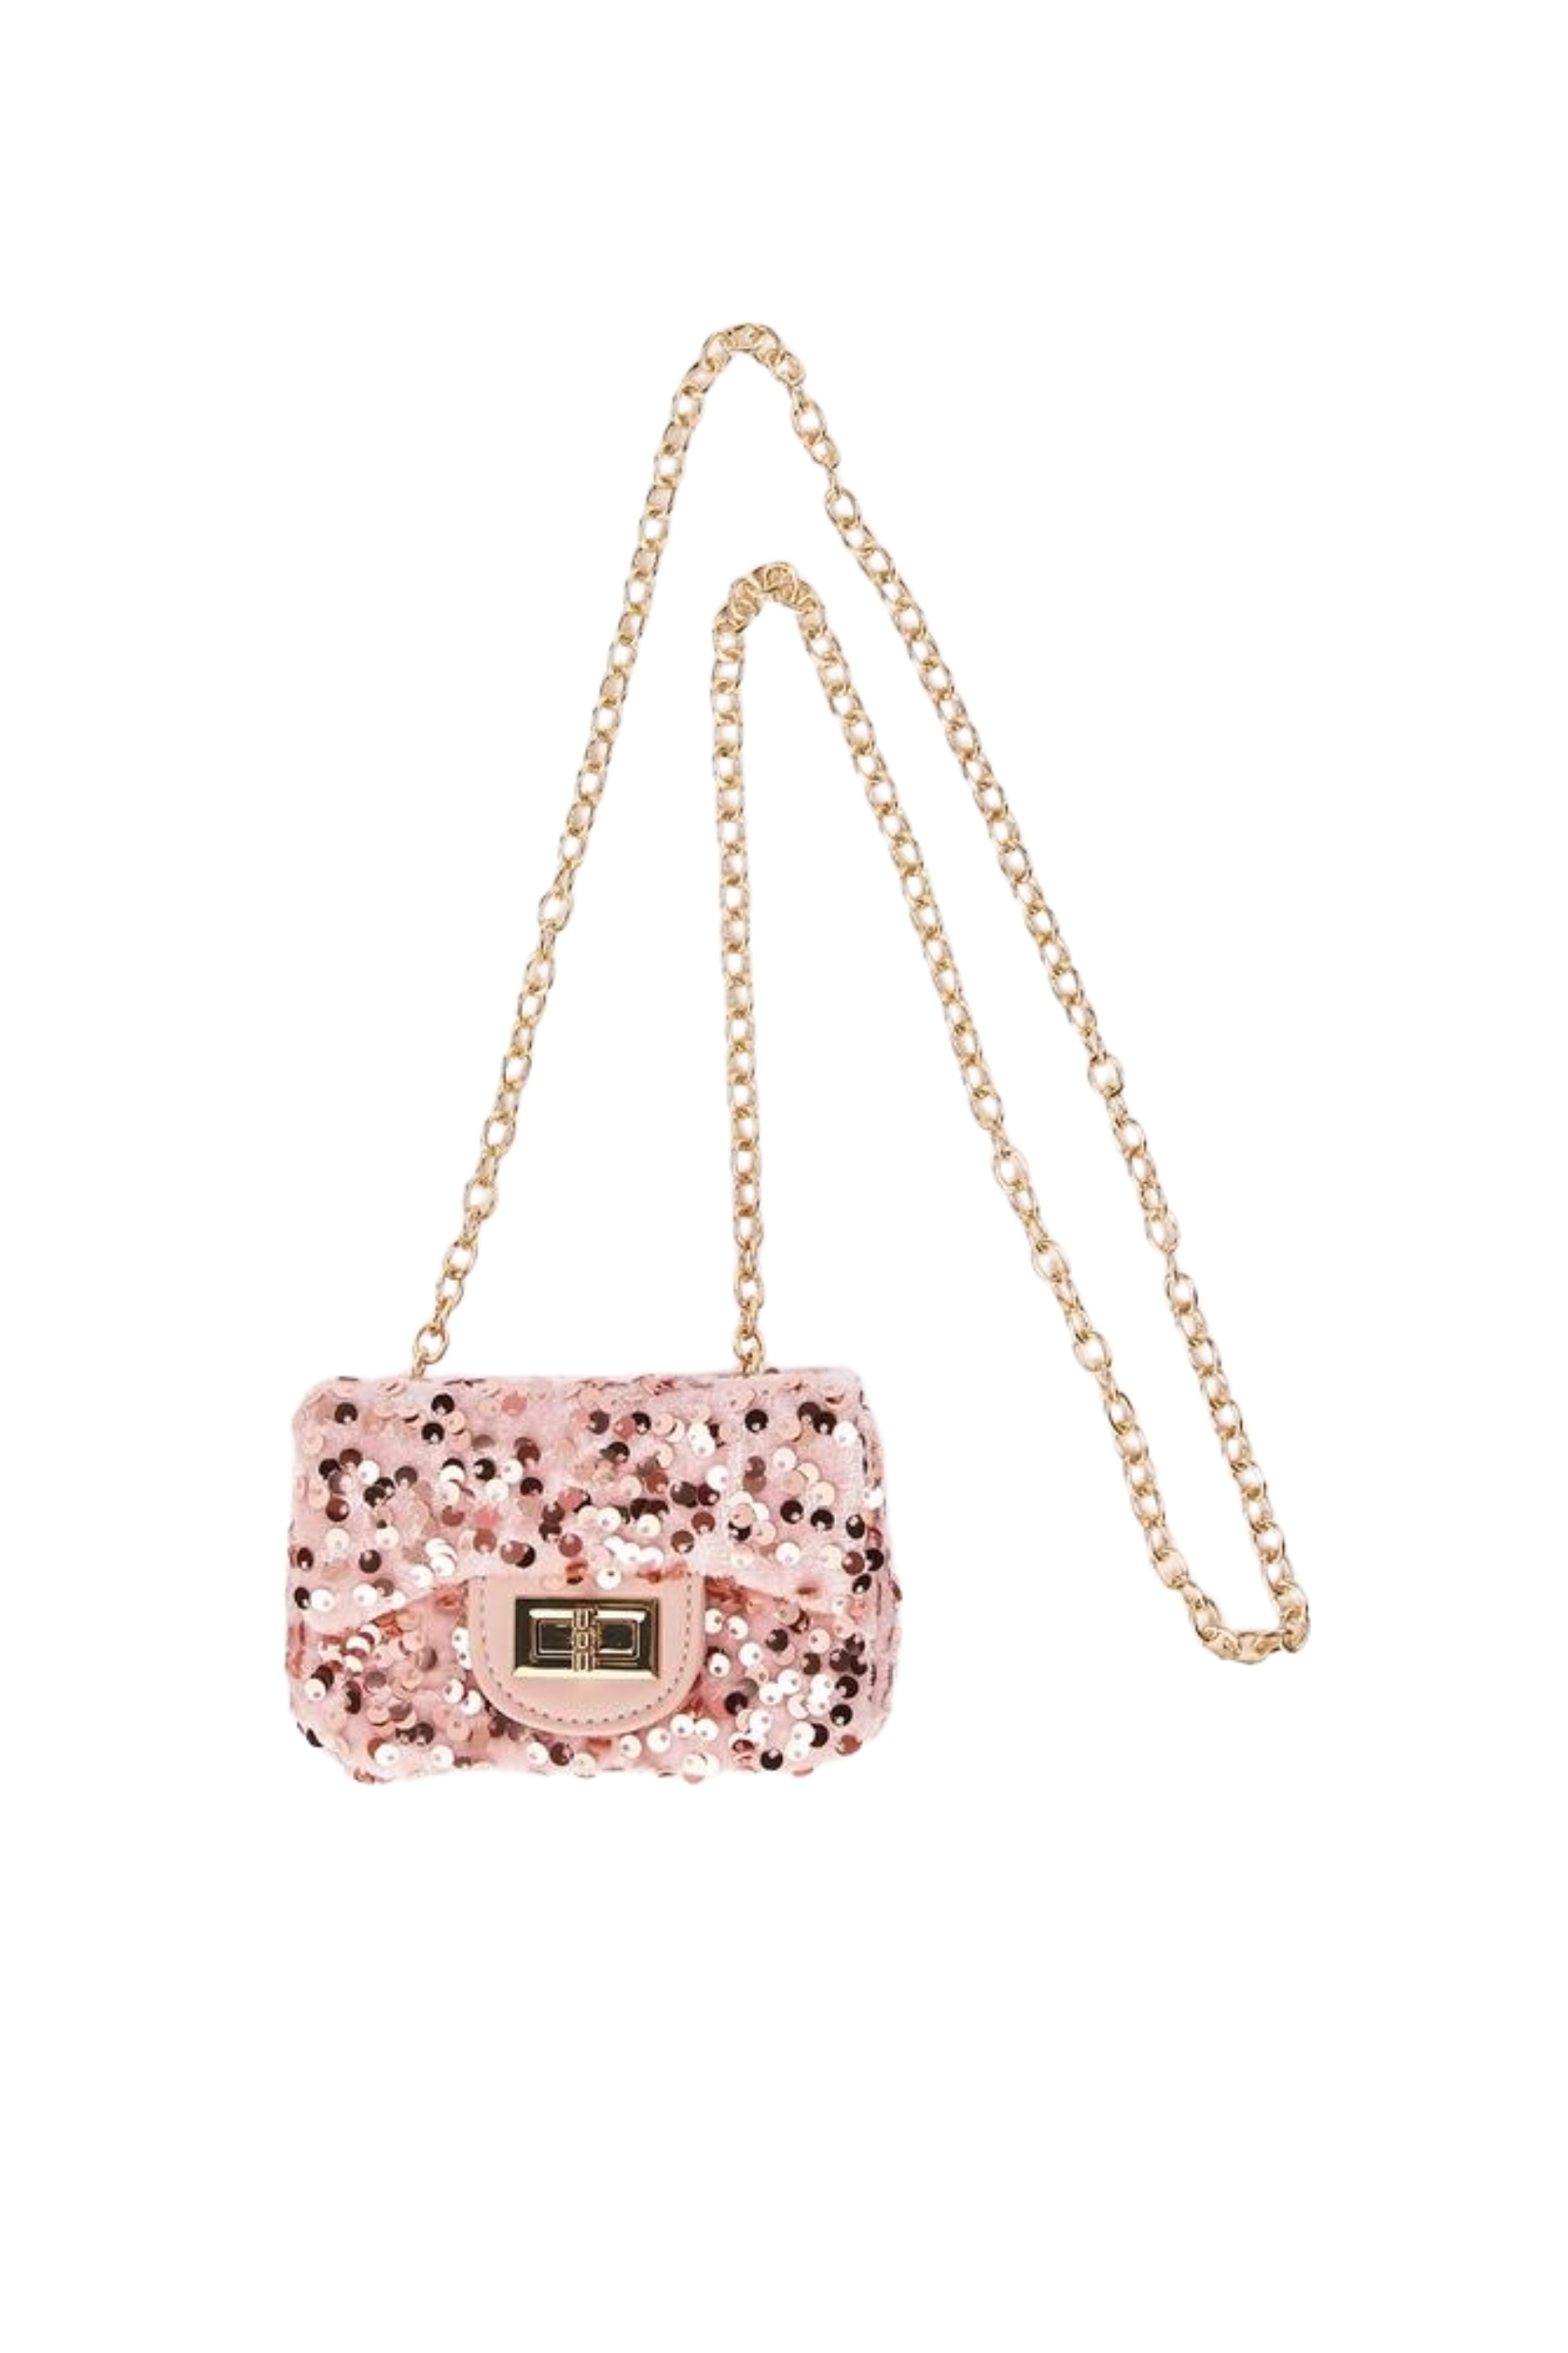 Women Metal Handle Party Handbag Beaded Sequin Evening Bag(Pink) -  Walmart.com